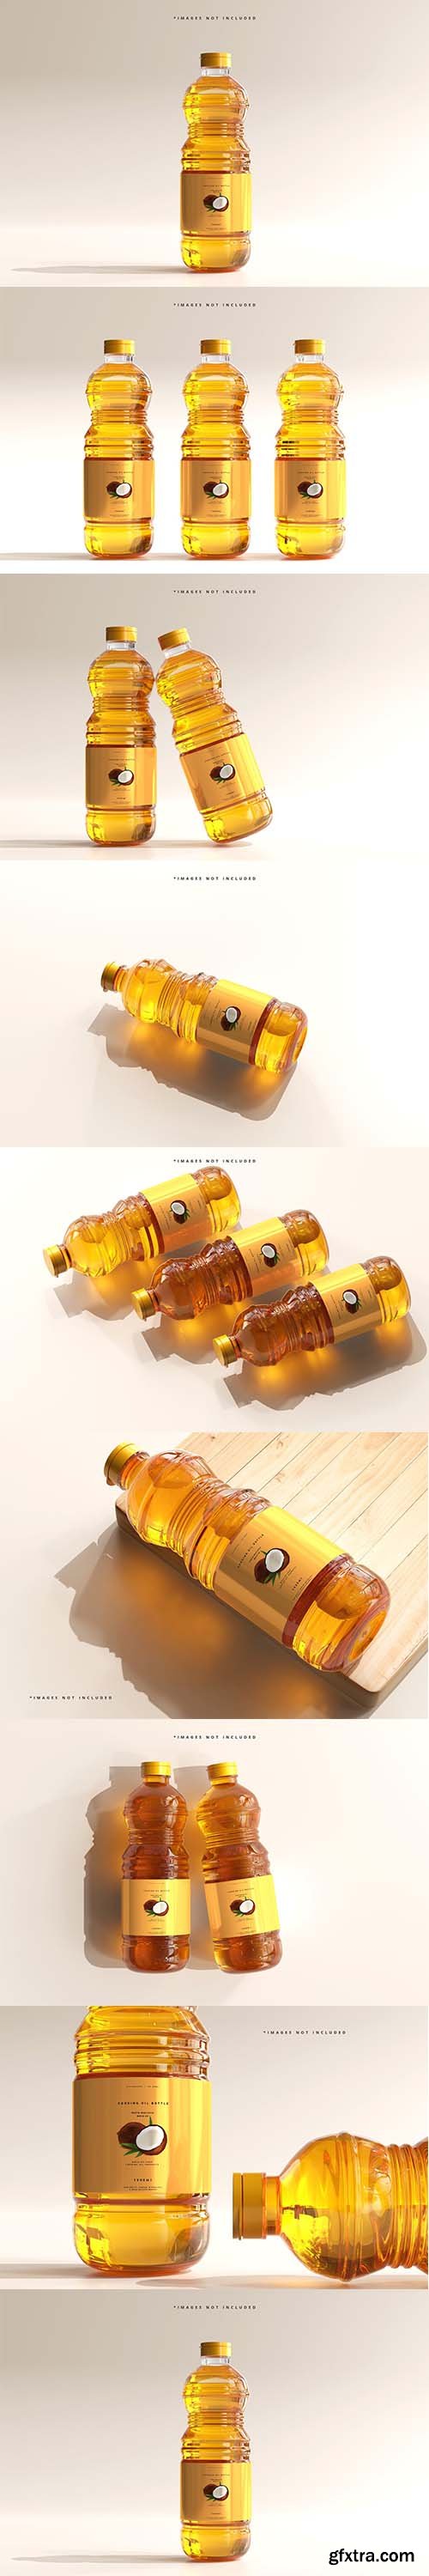 CreativeMarket - Cooking Oil Bottle Mockup 6005164